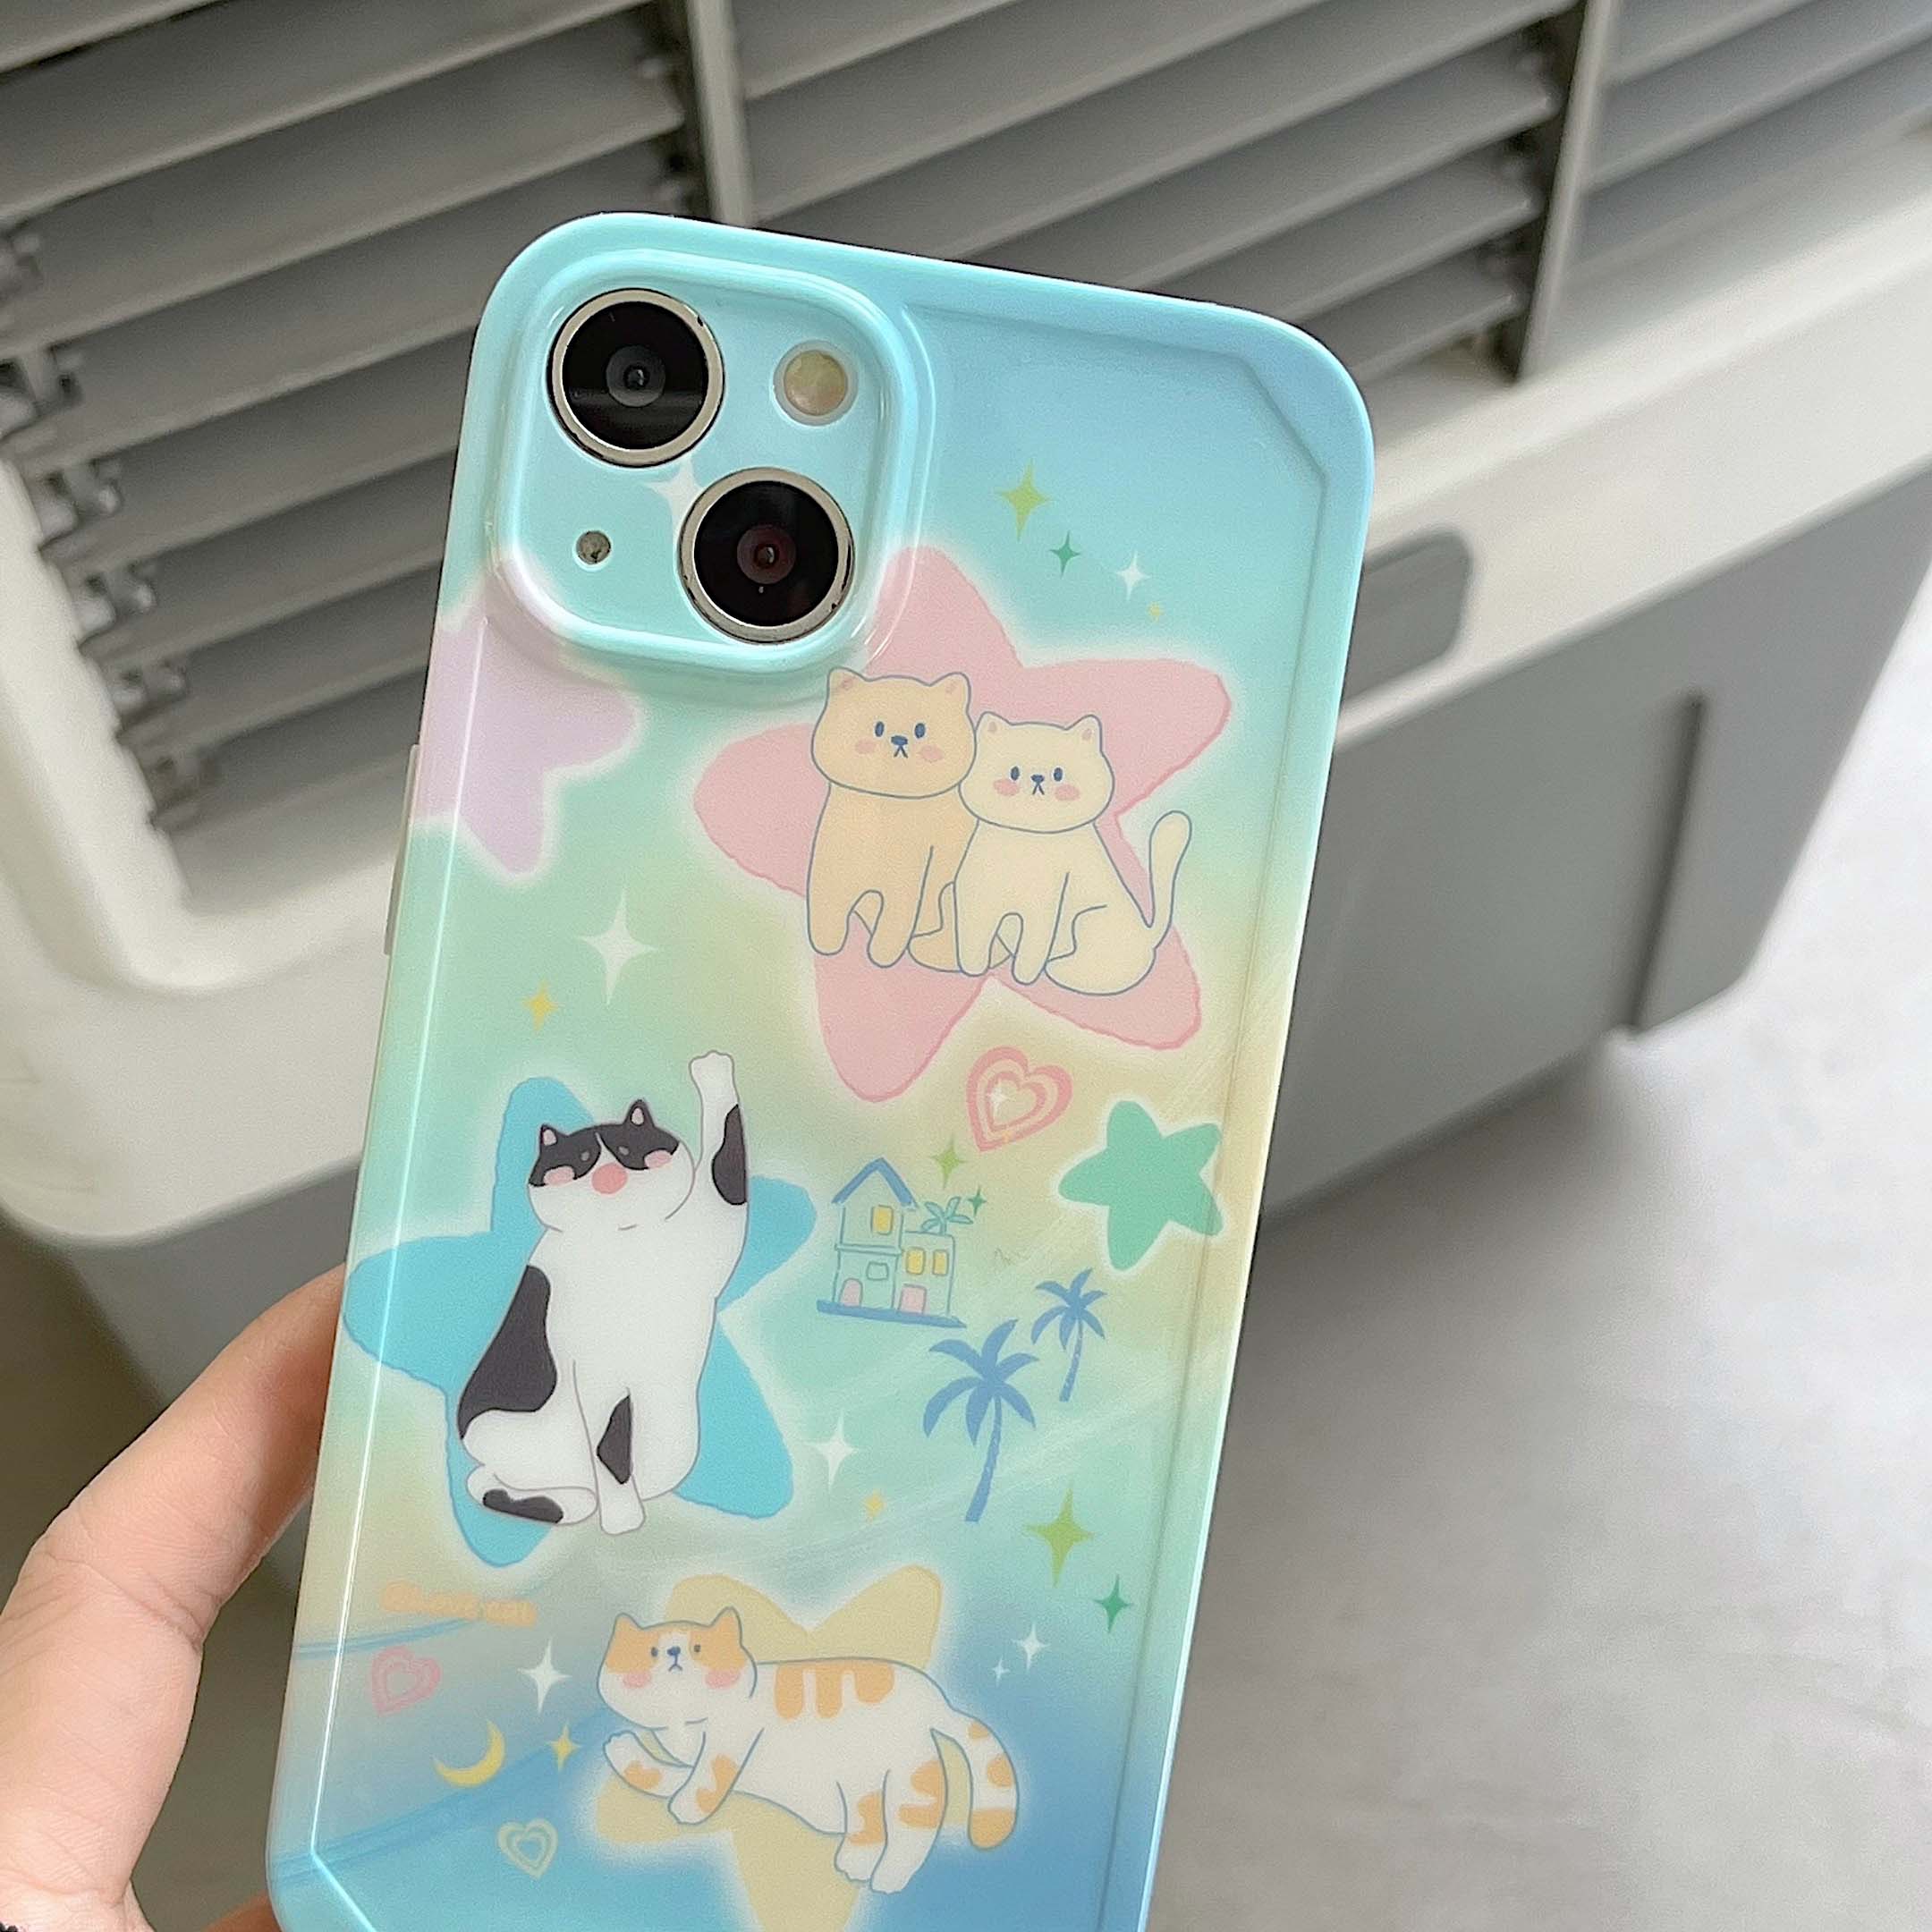 Kawaii iPhone Cat Phone Case - Cat Phone Case